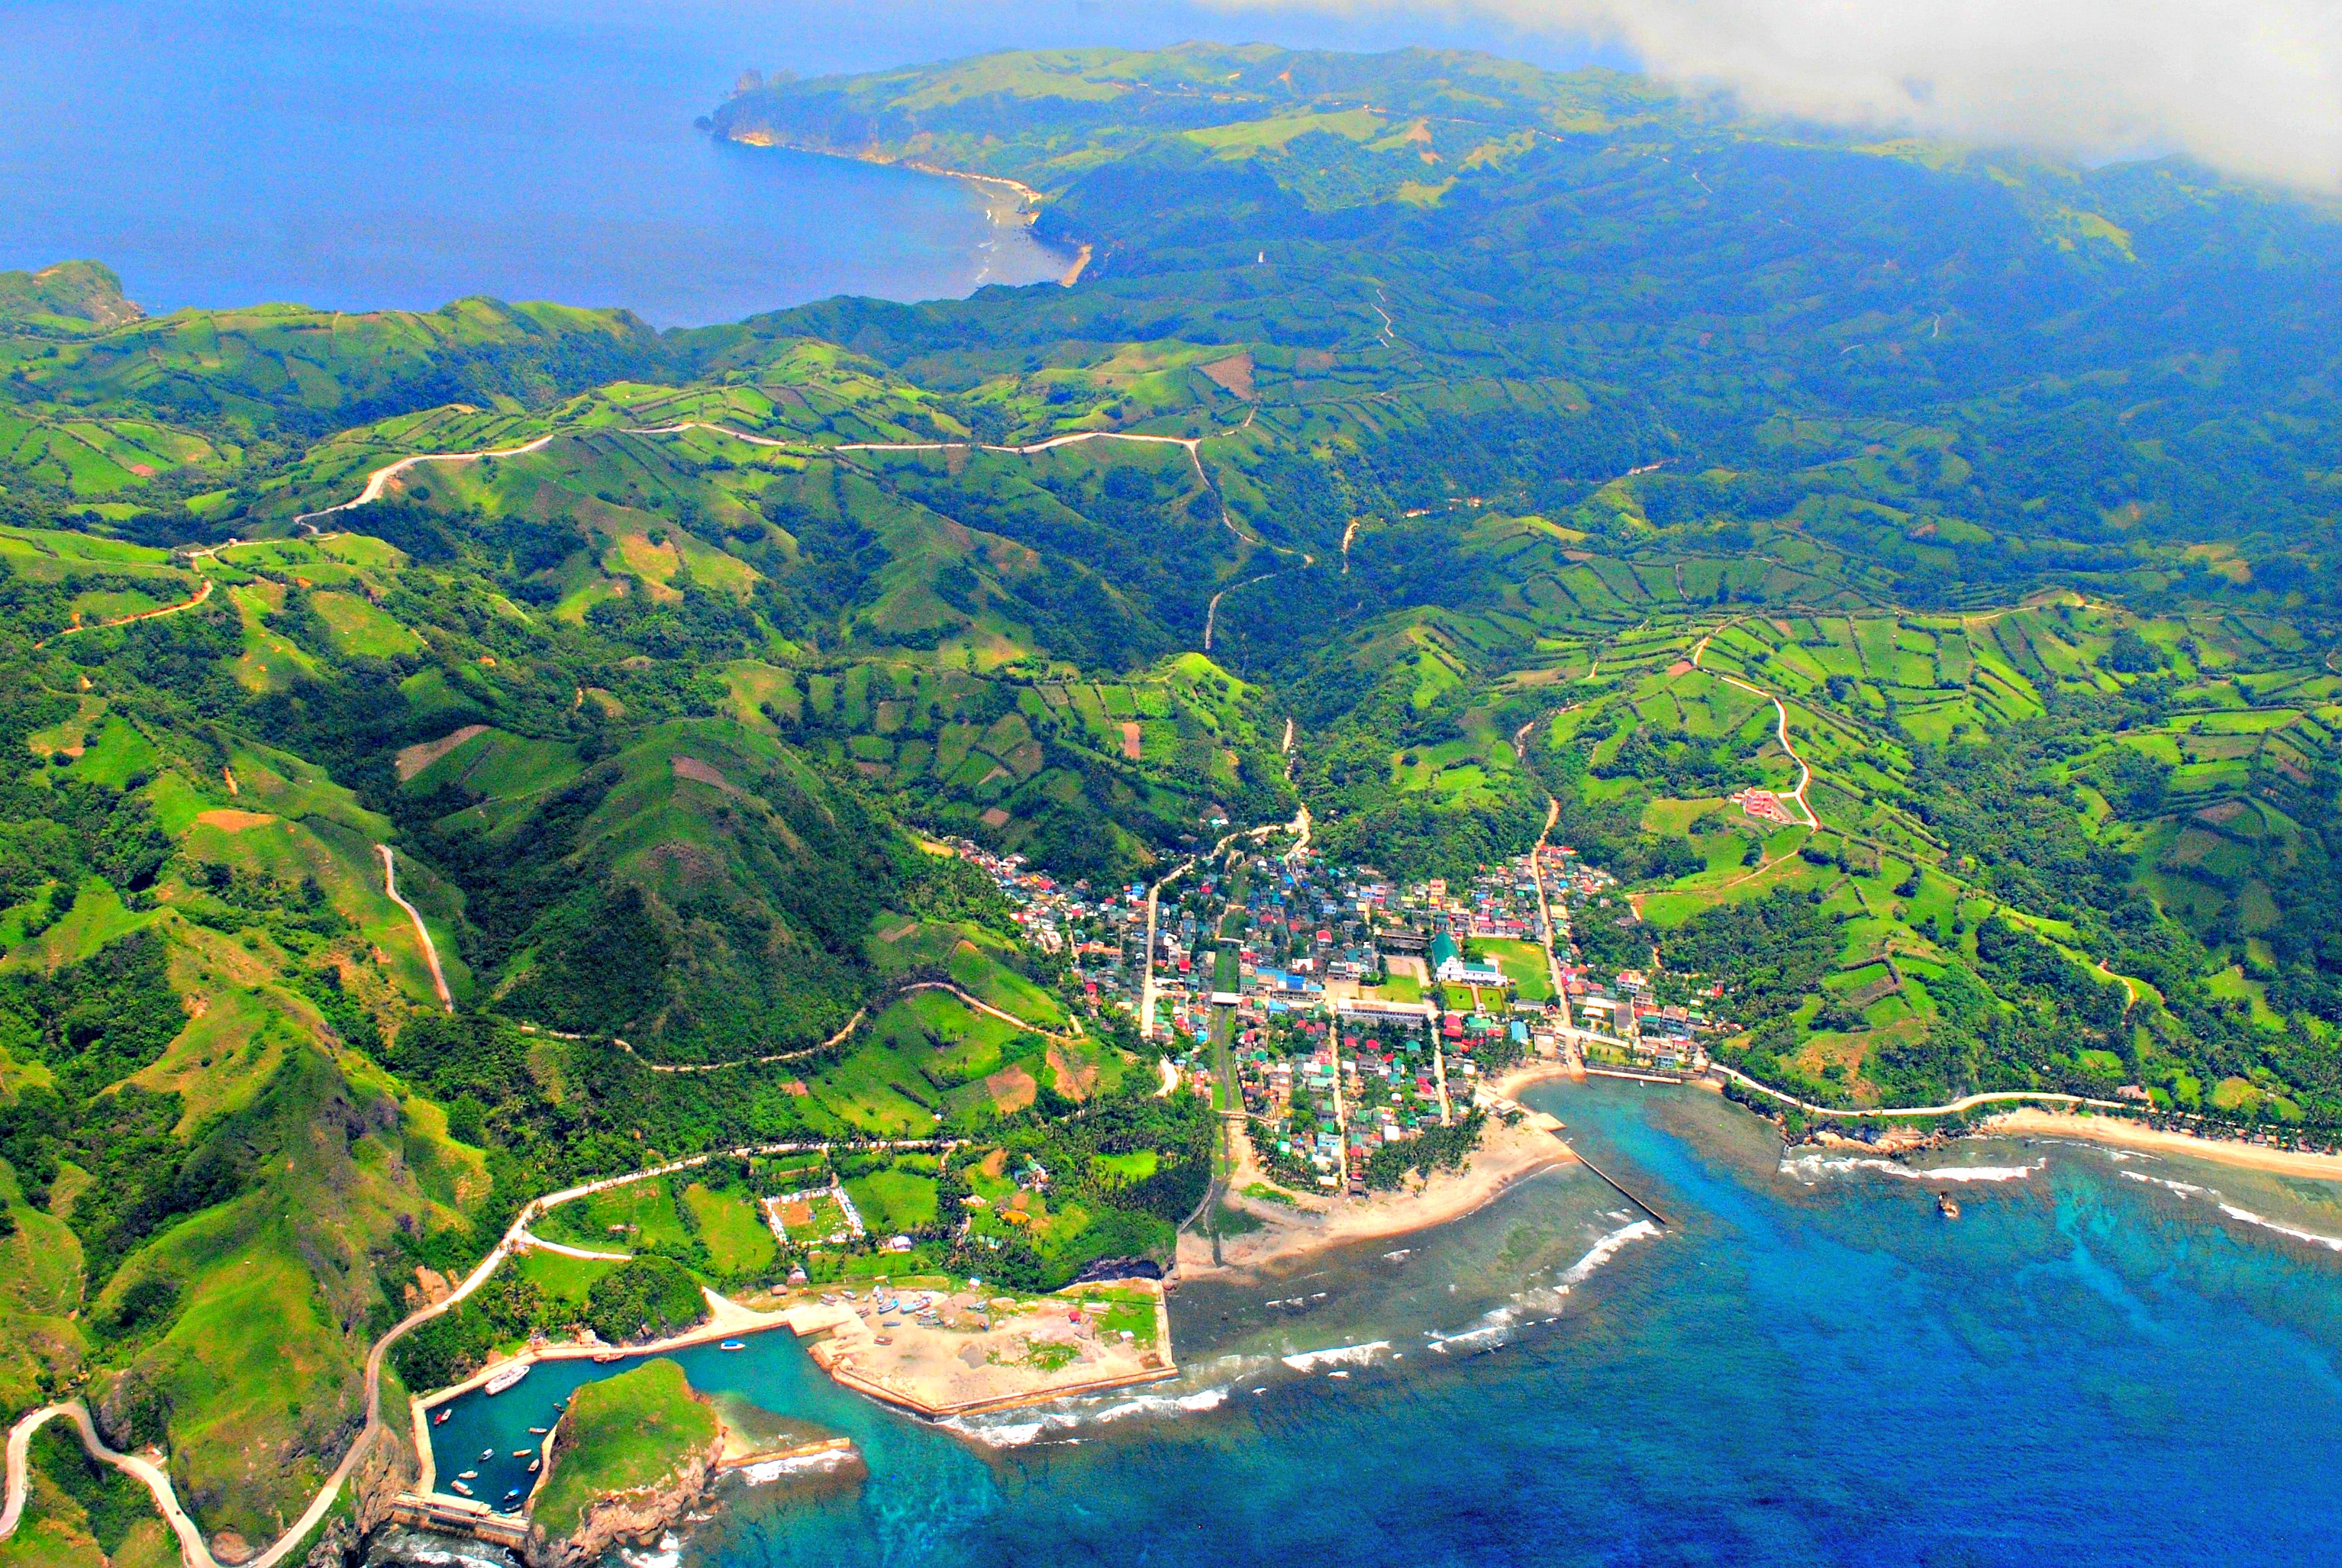 Thiên đường Batanes, với những thung lũng trải dài xuống biển xanh biếc